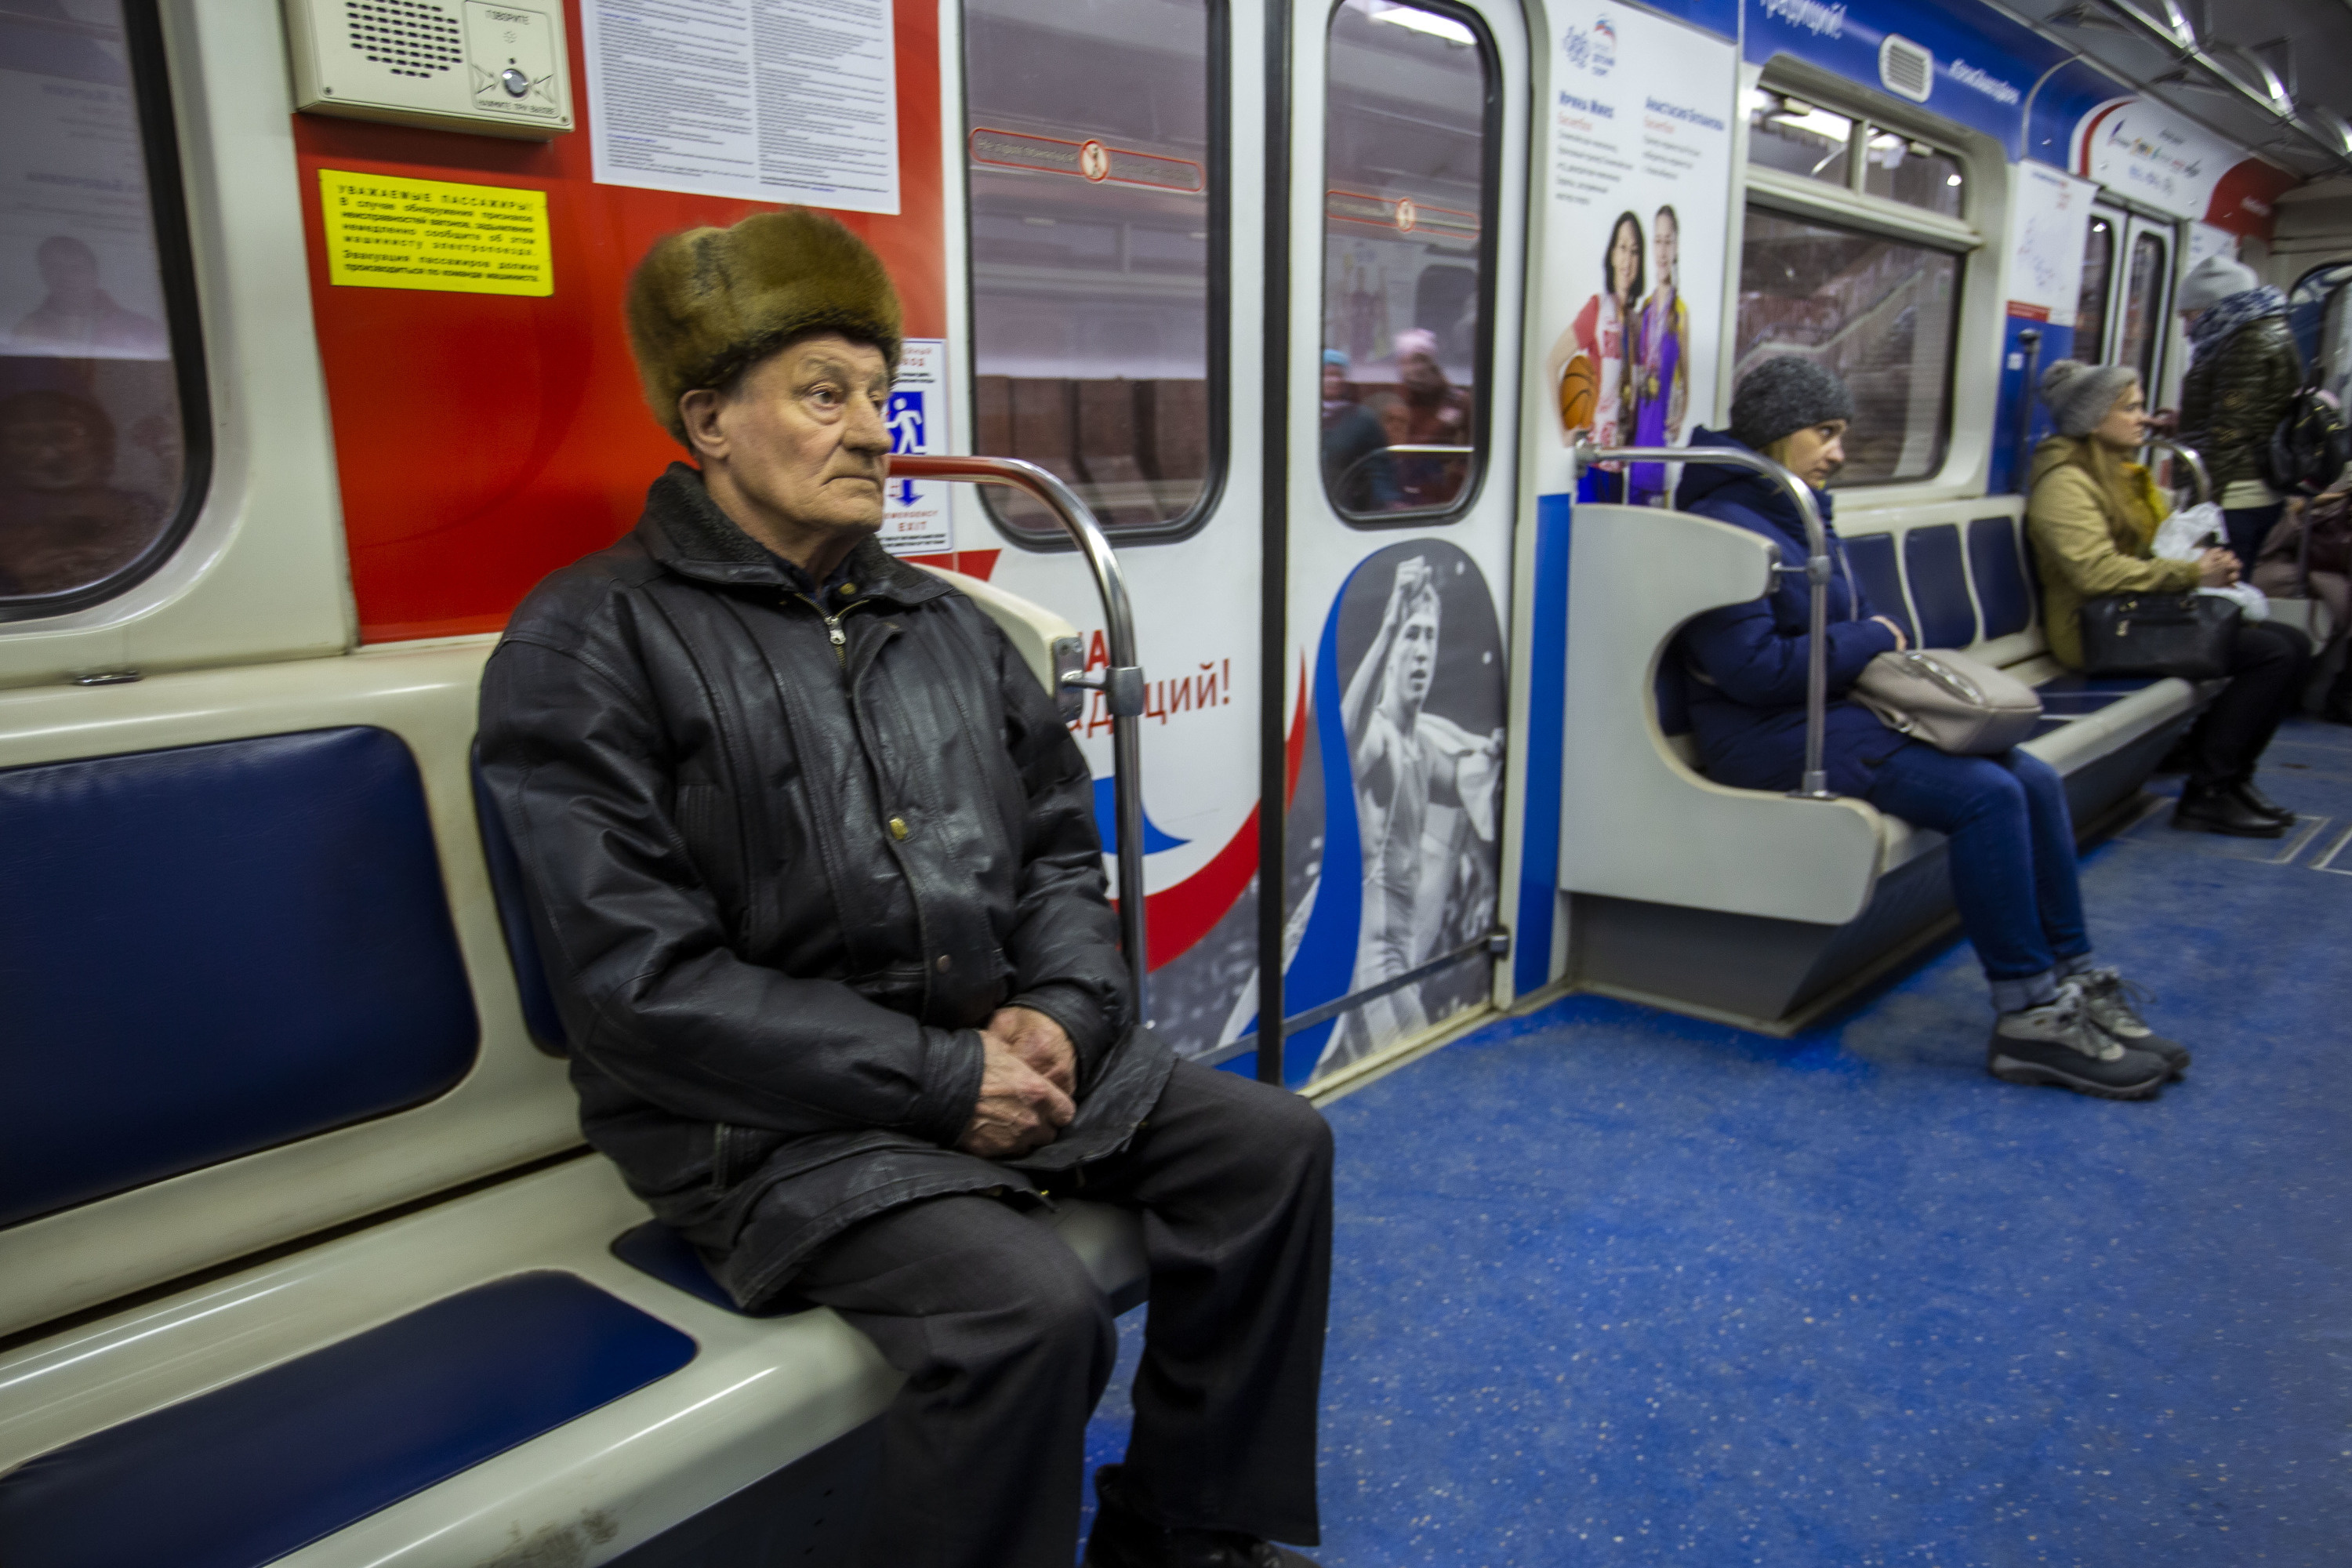 Пенсионеры не только пользуются общественным транспортом, но и не прибегают к элементарным способам защиты